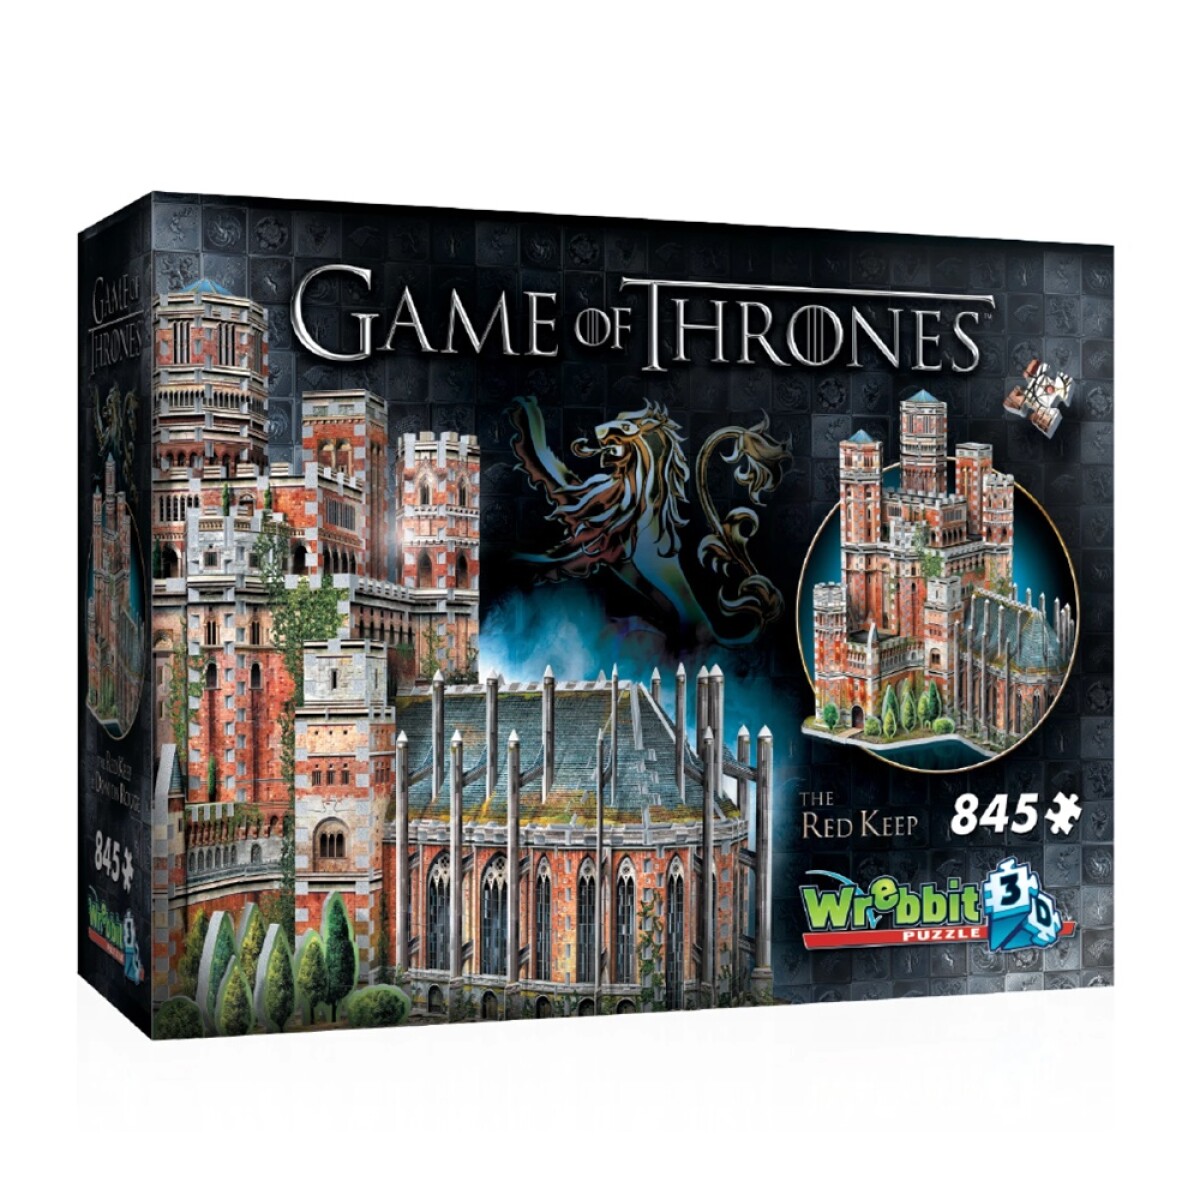 Puzzle 3D Maqueta de Game Of Thrones Fortaleza Roja 845 Pzas - Multicolor 